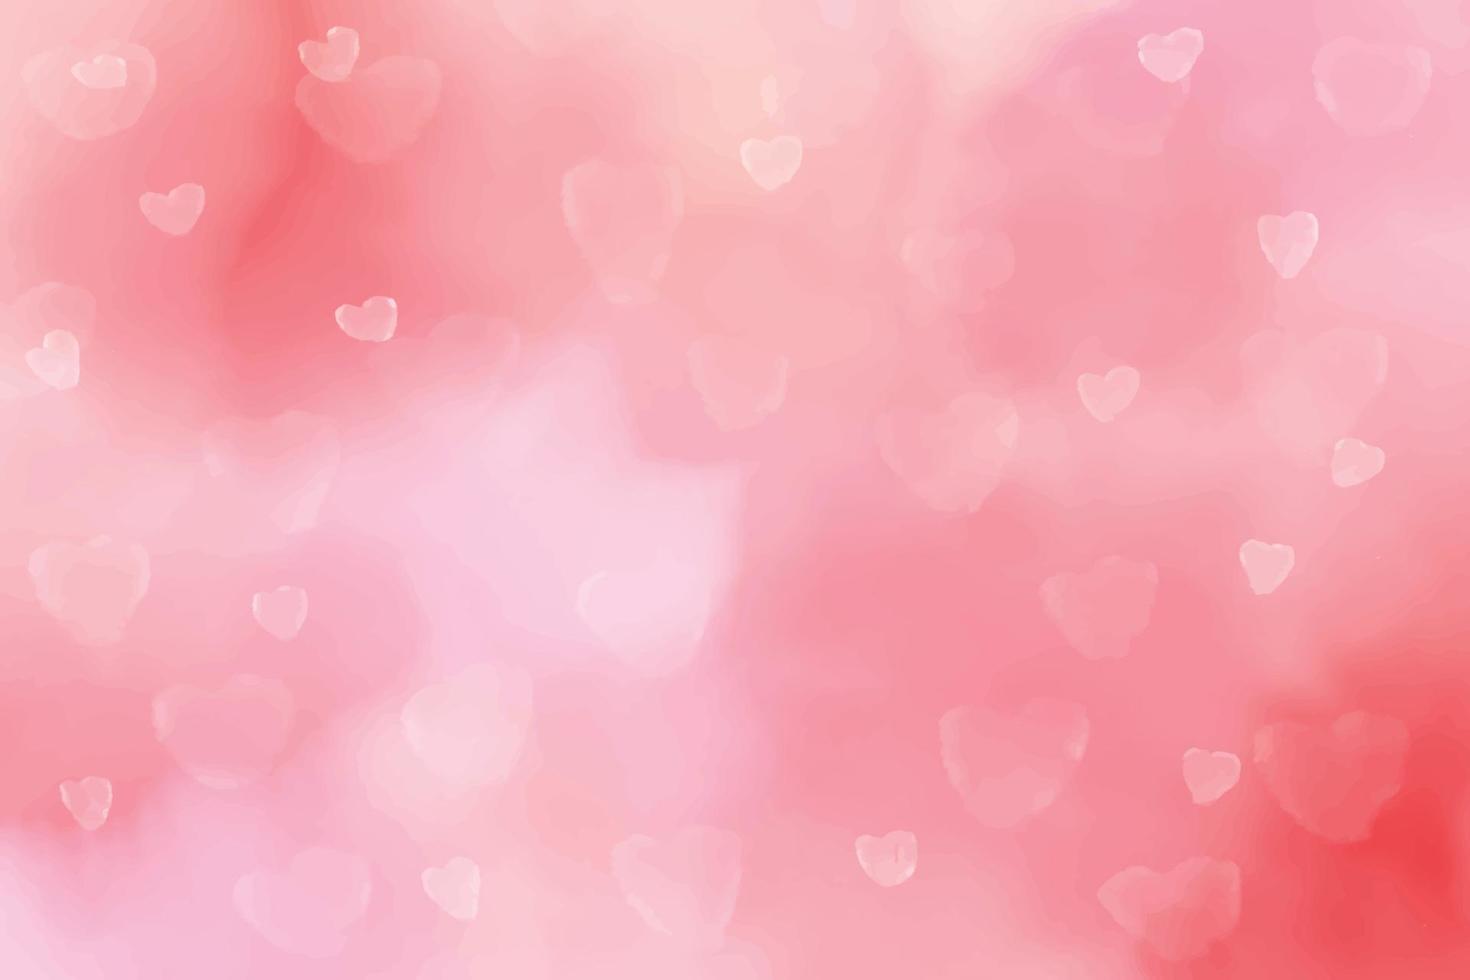 Fondo rosado del bokeh del corazón borroso de la acuarela para el ejemplo de los vectores eps10 del día de San Valentín